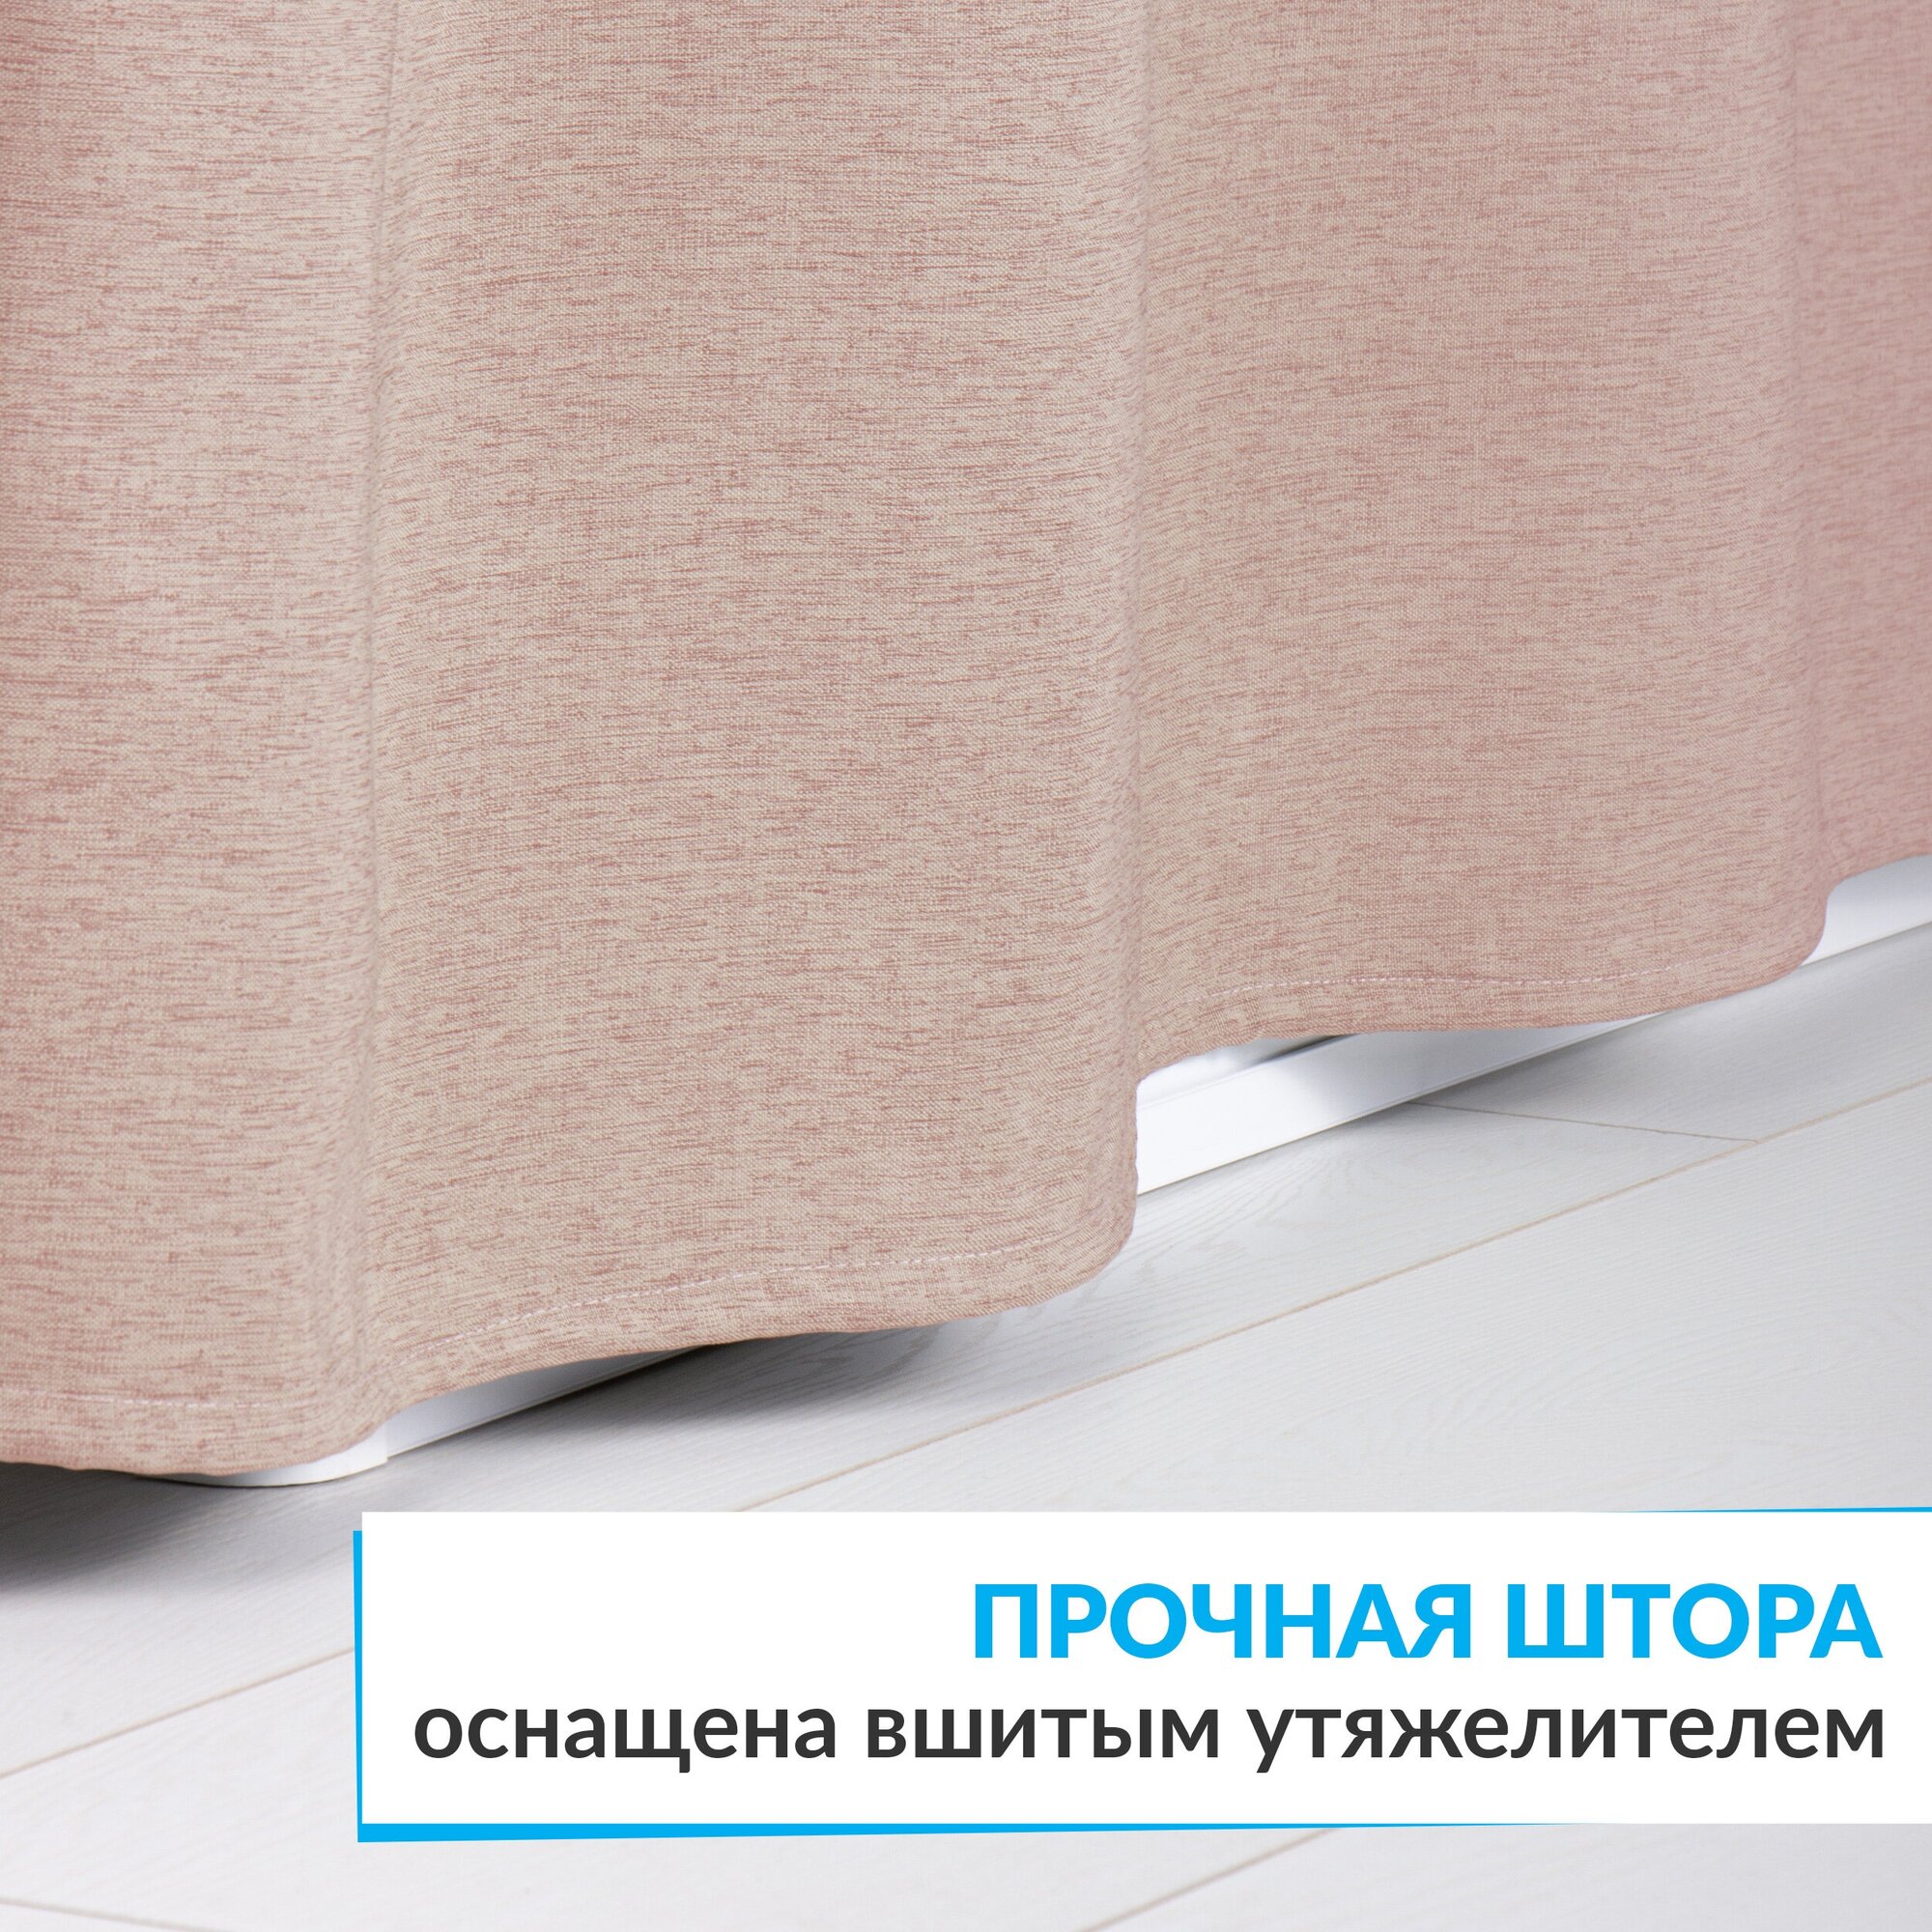 Штора для ванной тканевая плотная LEN 240х200 см полиэстер / текстура лён / розовая занавеска для душа